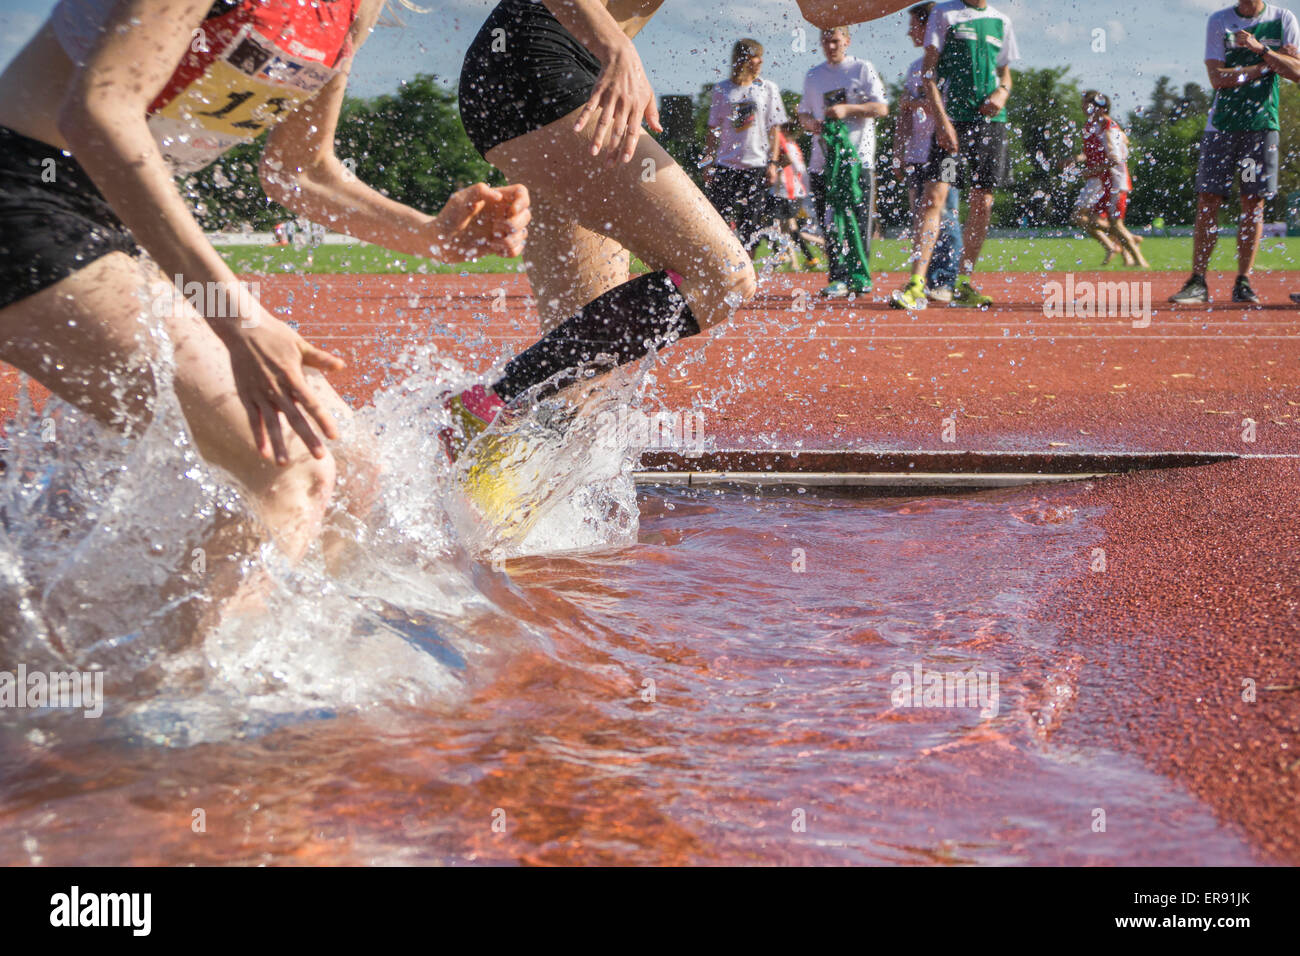 PLIEZHAUSEN, BADEN-WUERTTEMBERG/ Germania - Mai 17 2015: Sconosciuto steeplechasers femmina in tedesco Track & Field Championships in esecuzione attraverso l'acqua ostacolo Foto Stock